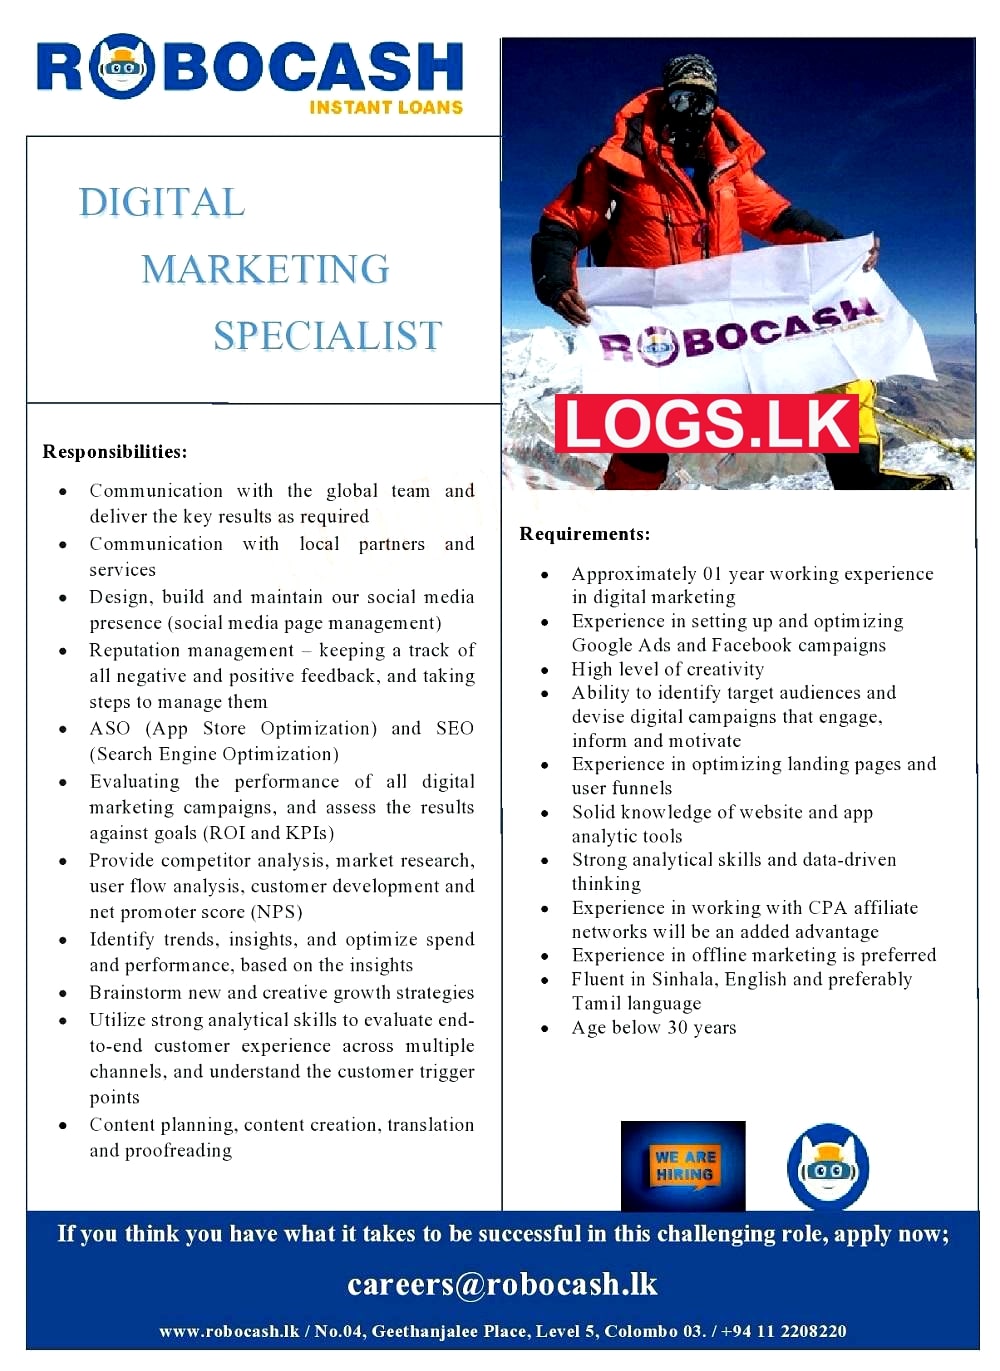 Digital Marketing Specialist Job Vacancy at Robocash Job Vacancies